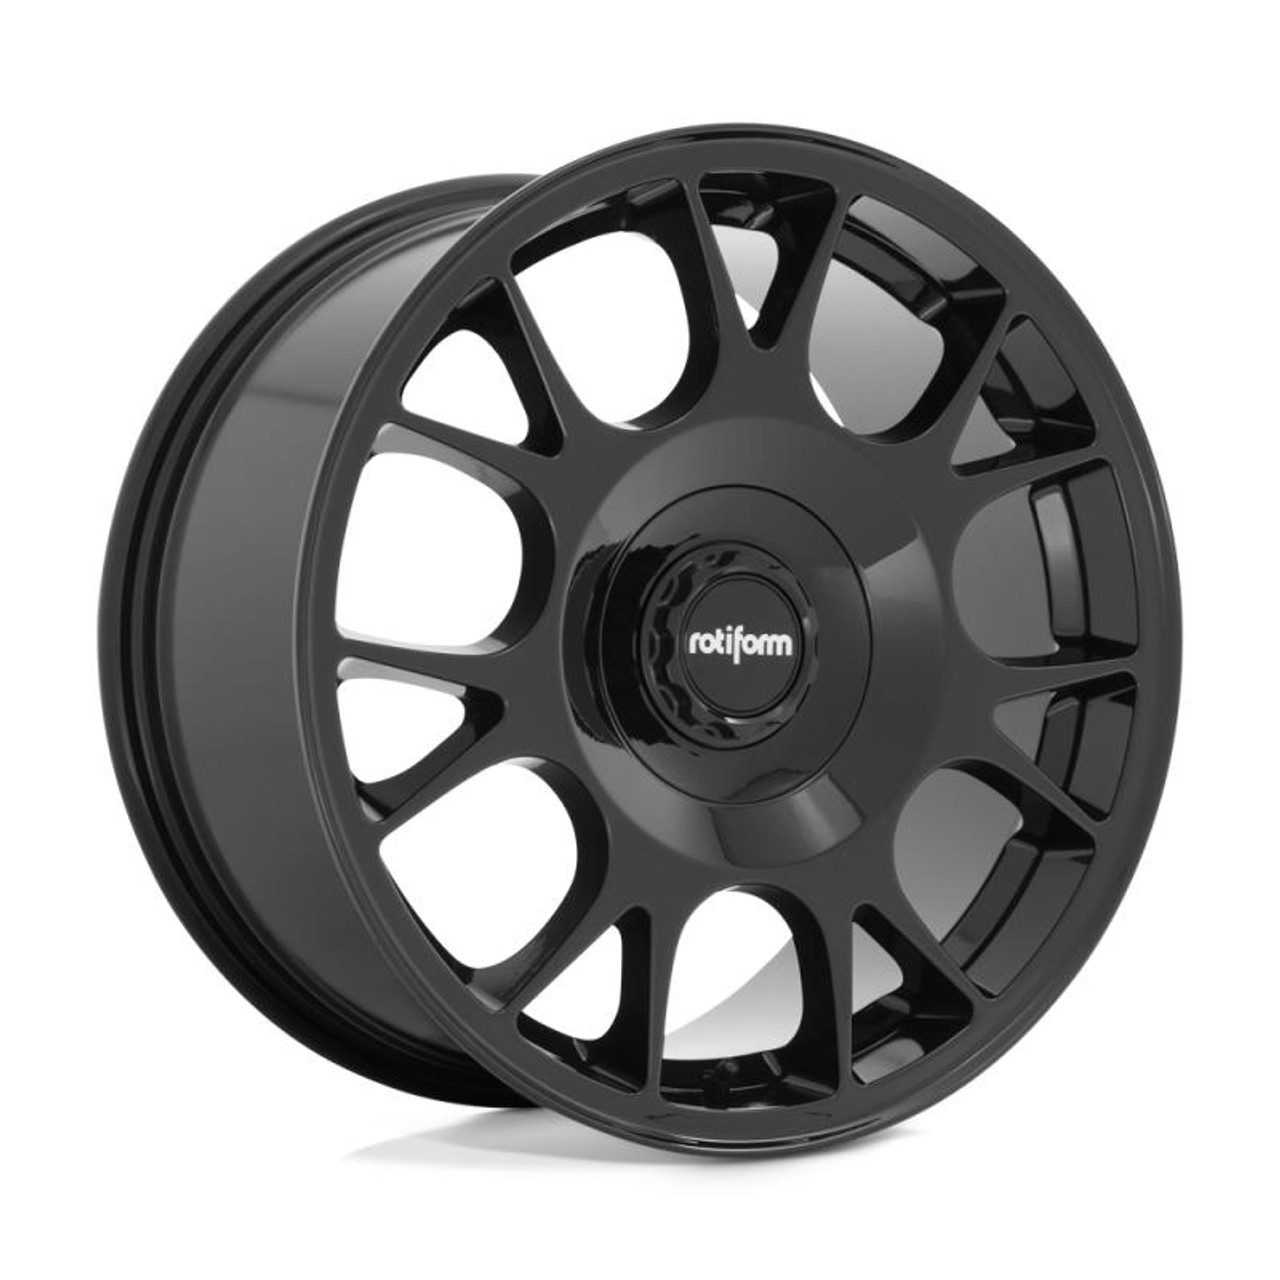  Rotiform R187 TUF-R Wheel 20x8.5 5x112/5x114.3 35 Offset - Gloss Black - R187208542+35 